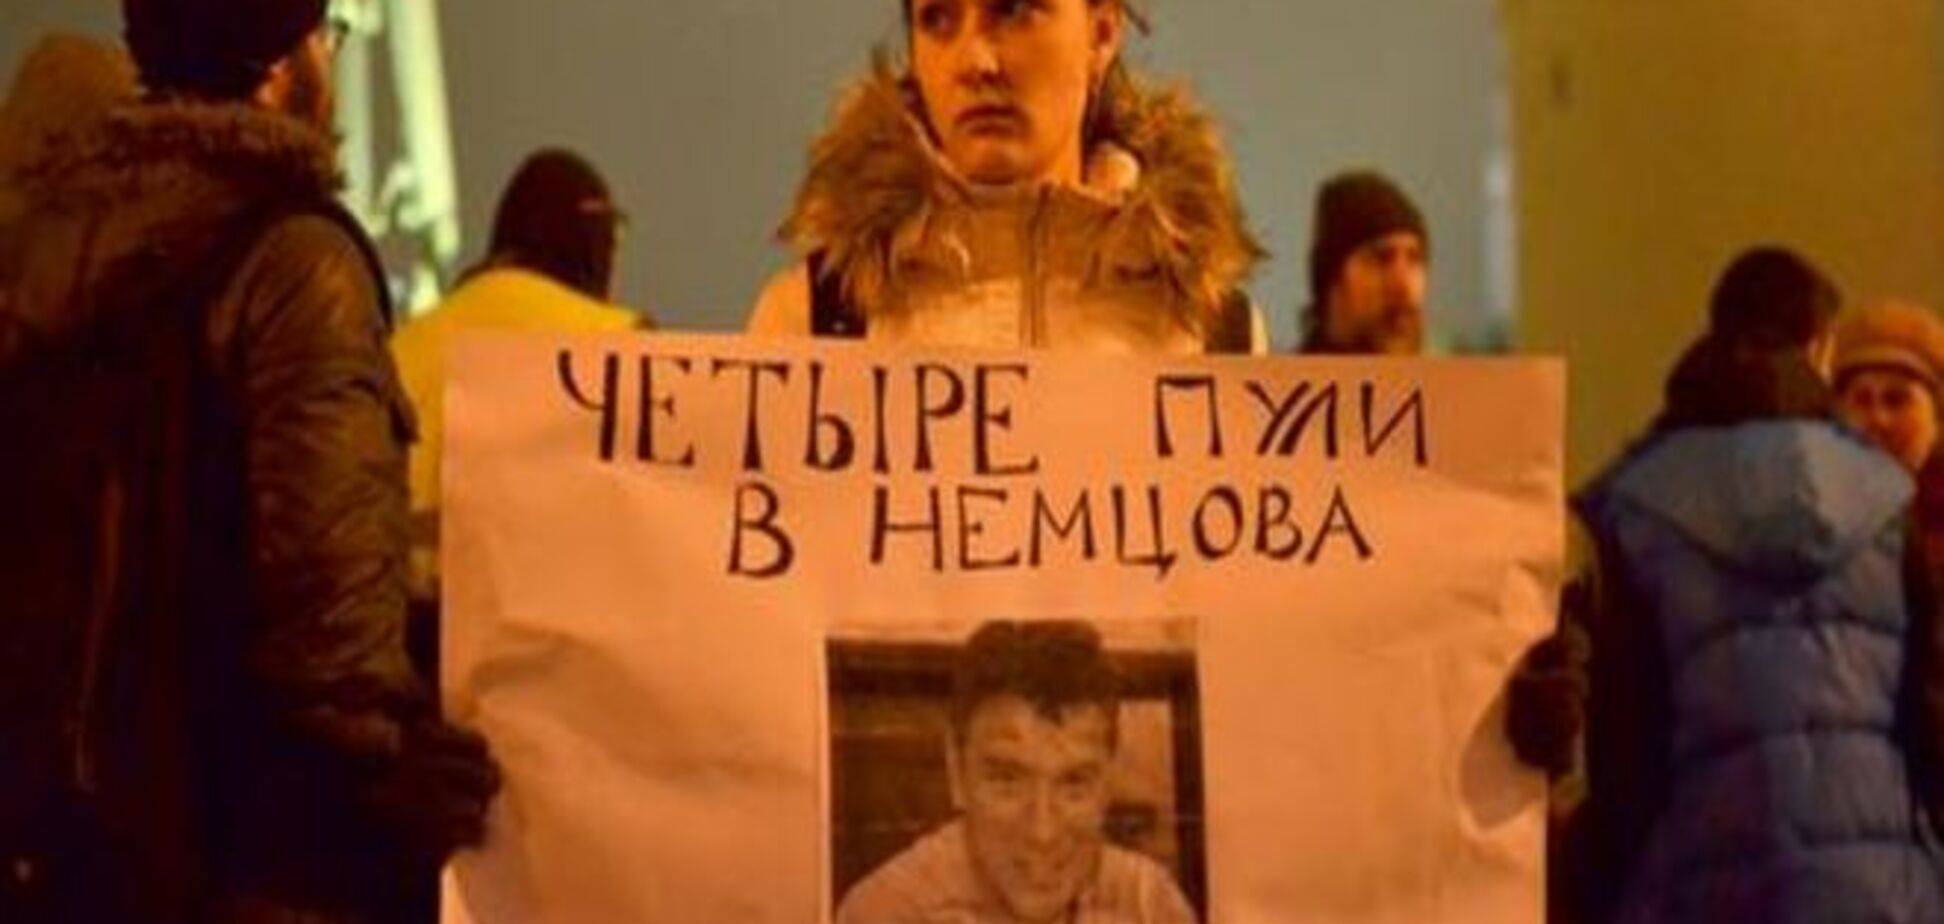 'Четыре пули в меня': как изменилась Москва после убийства Немцова